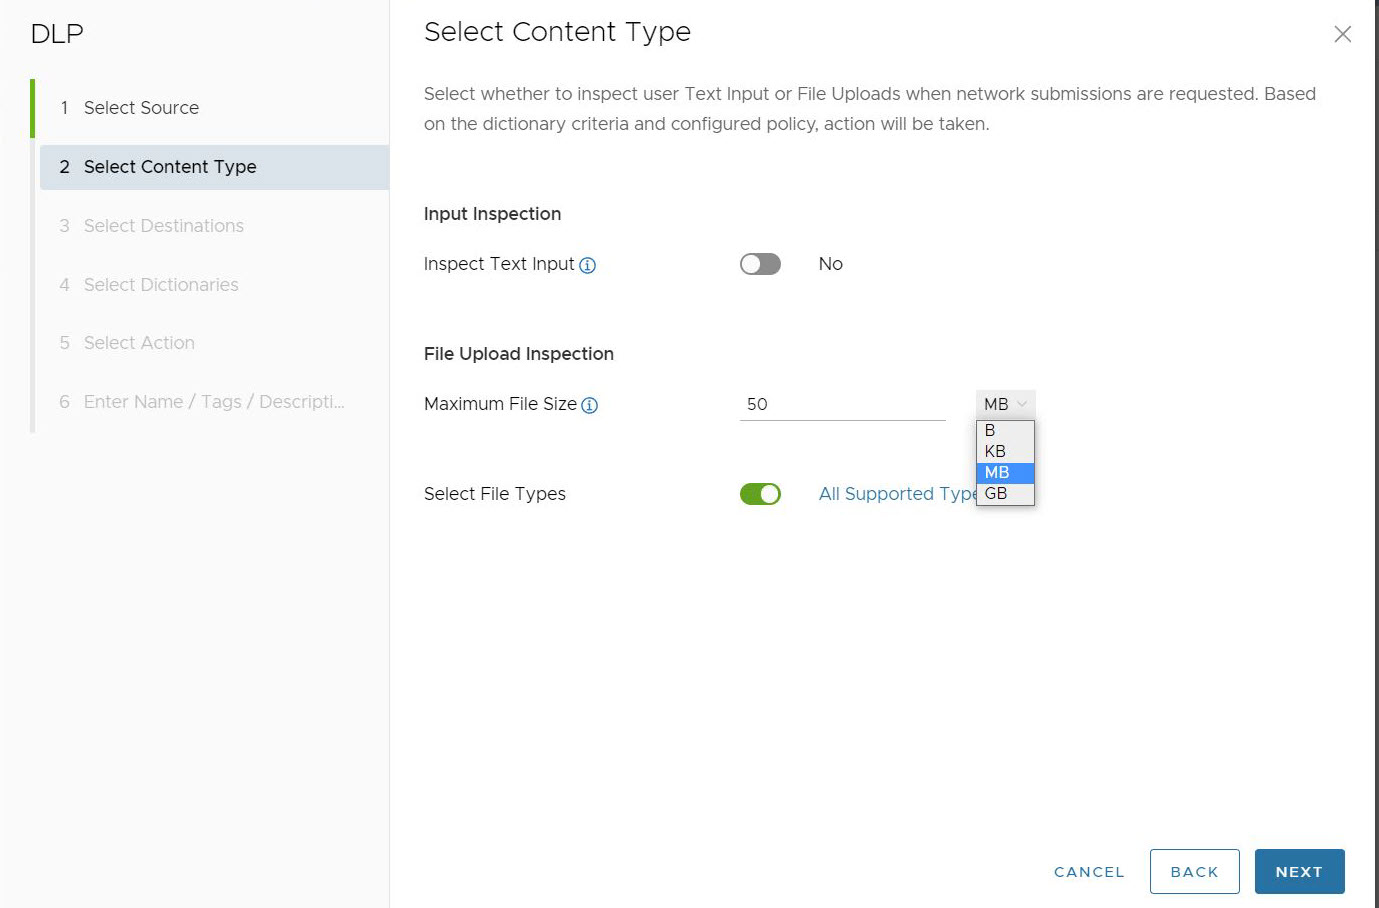 Ecrã predefinido para Selecionar tipo de conteúdo (Select Content Type) a mostrar Inspecionar entrada de texto (Inspect Text Input), Inspeção de carregamento de ficheiros (File Upload Inspection) com Tamanho máximo do ficheiro (Maximum File Size ) e Selecionar tipos de ficheiro (Select File Types).